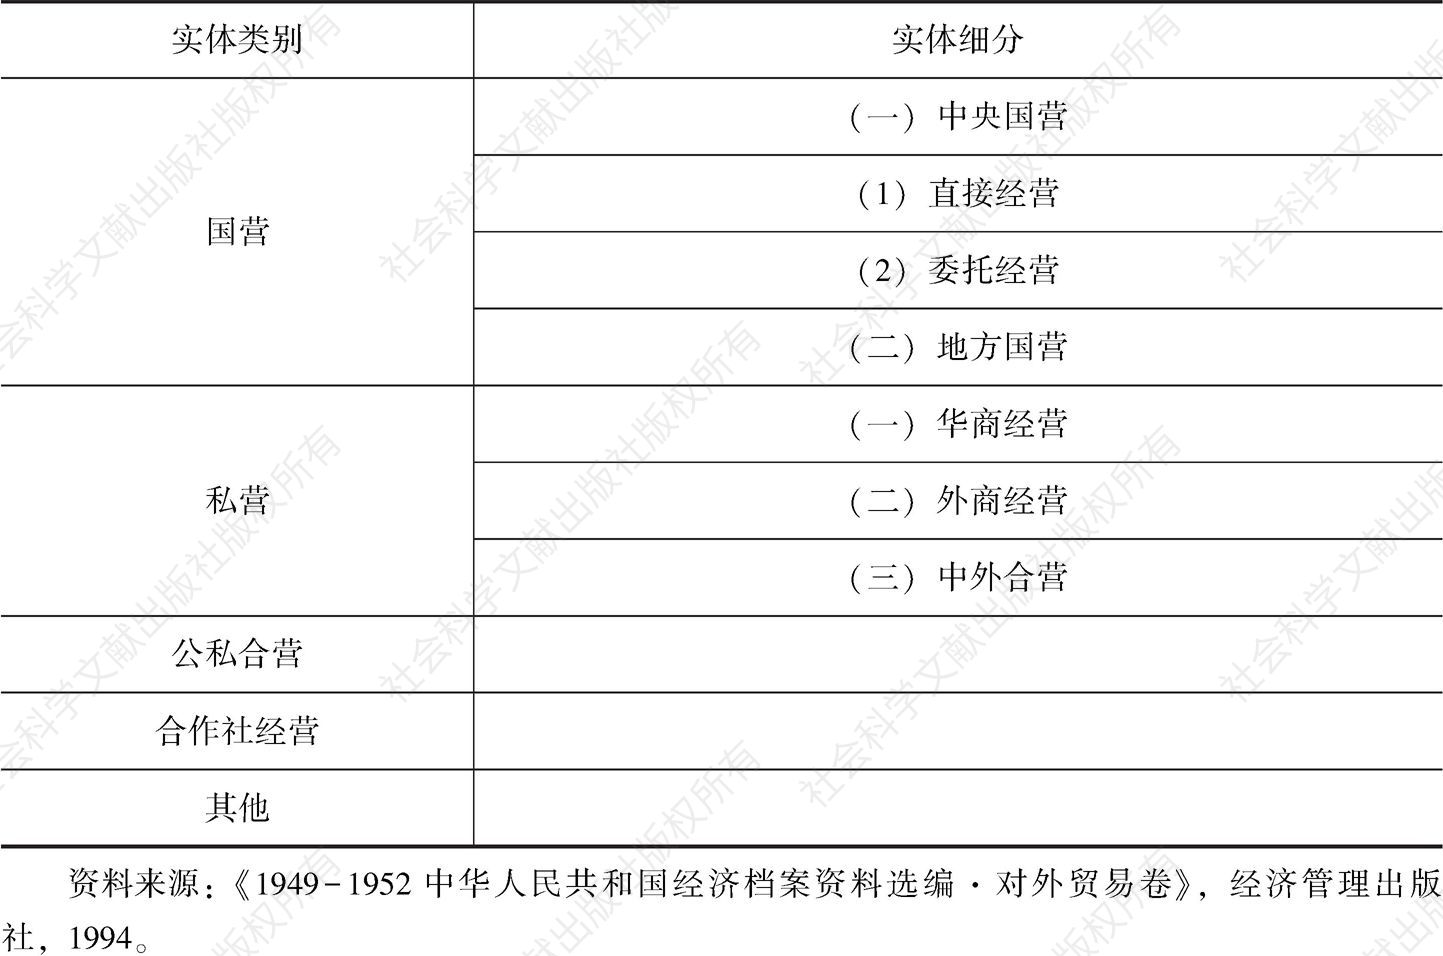 表1.6 1950～1952年中国对外贸易经营实体分类